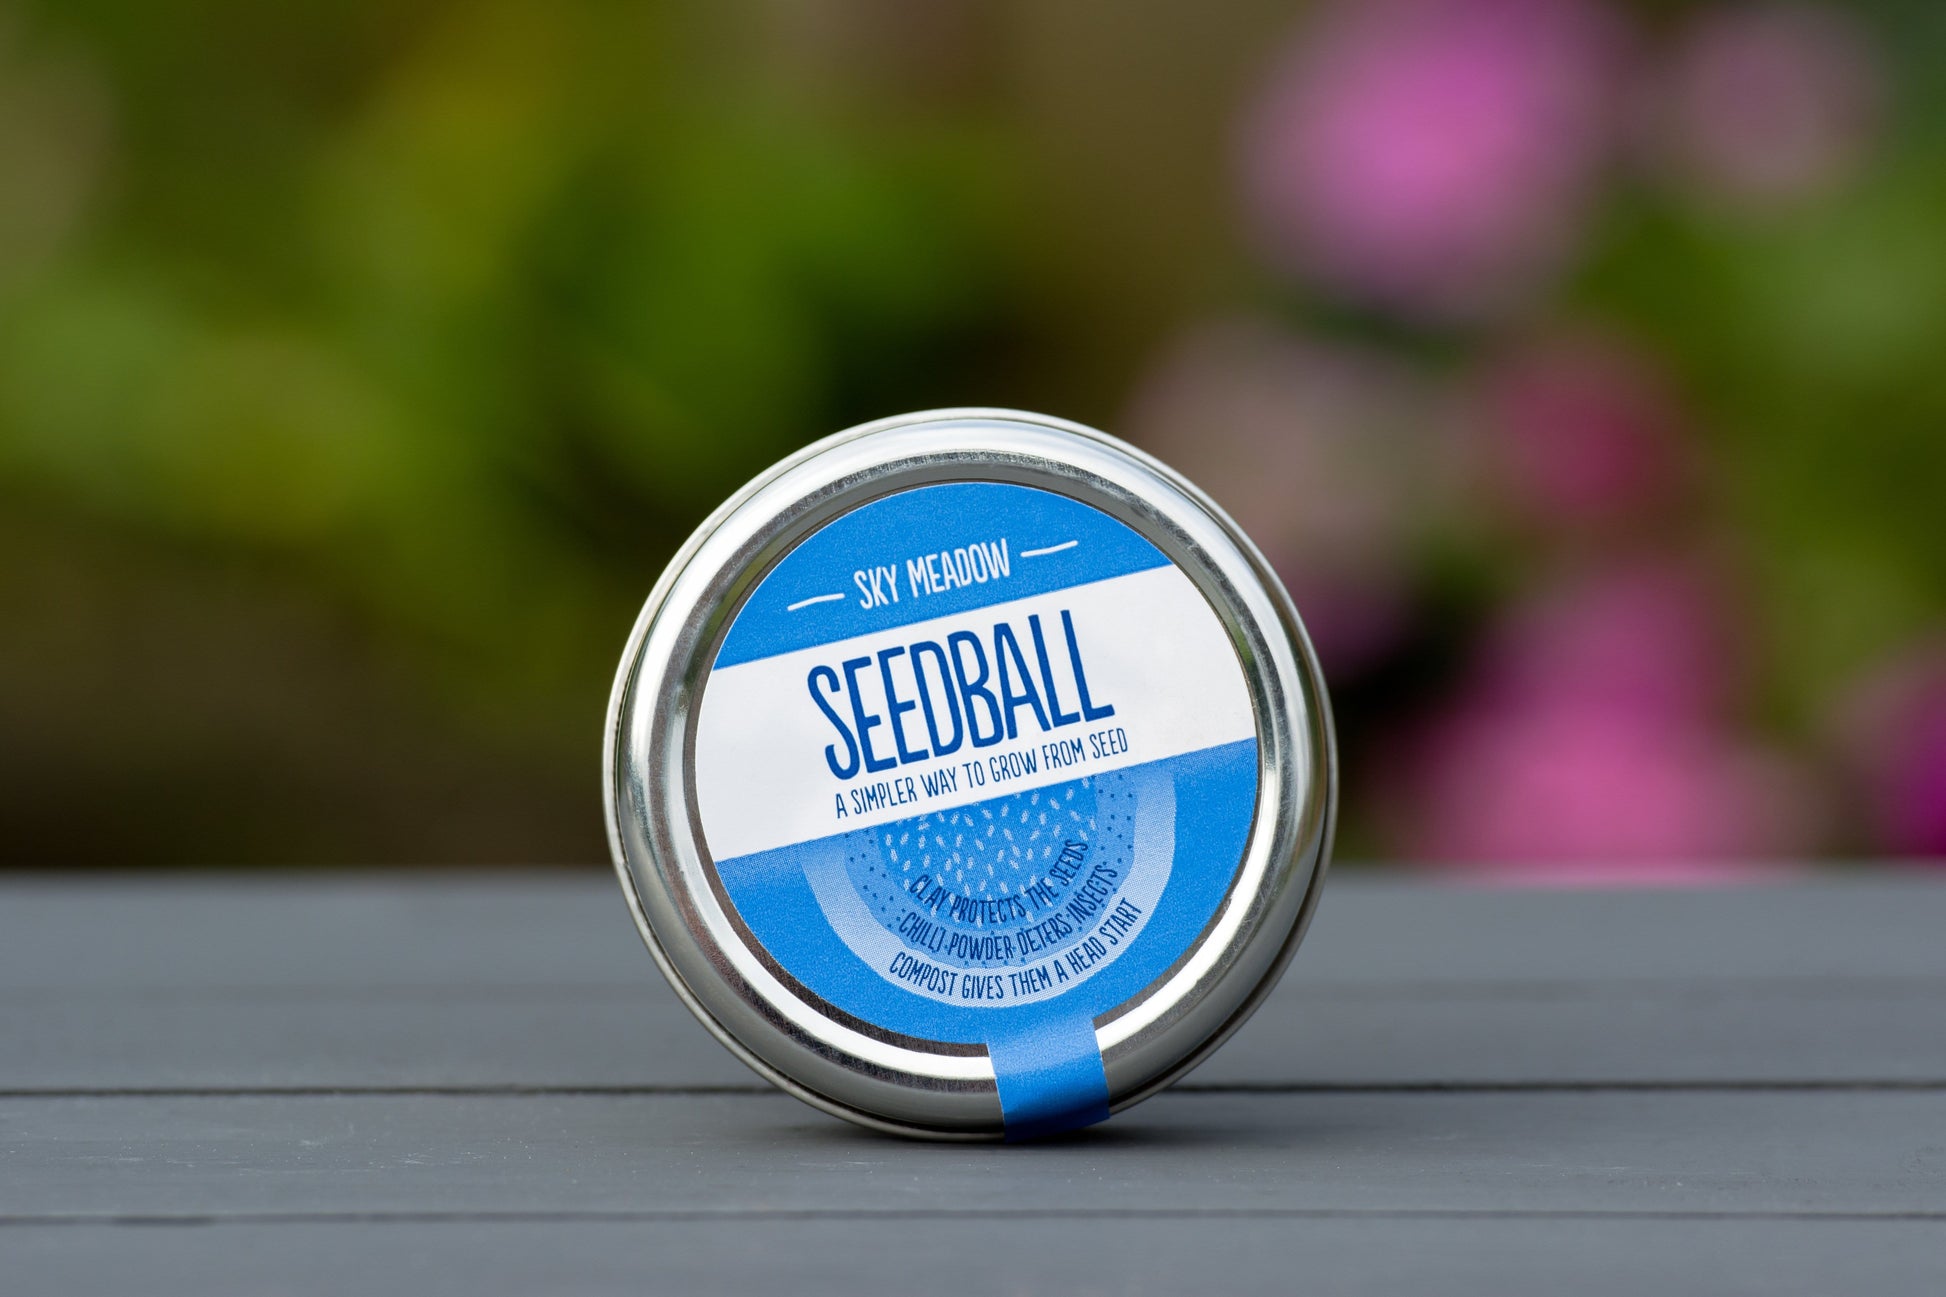 Sky Meadow Seedball Tin - ShopGreenToday